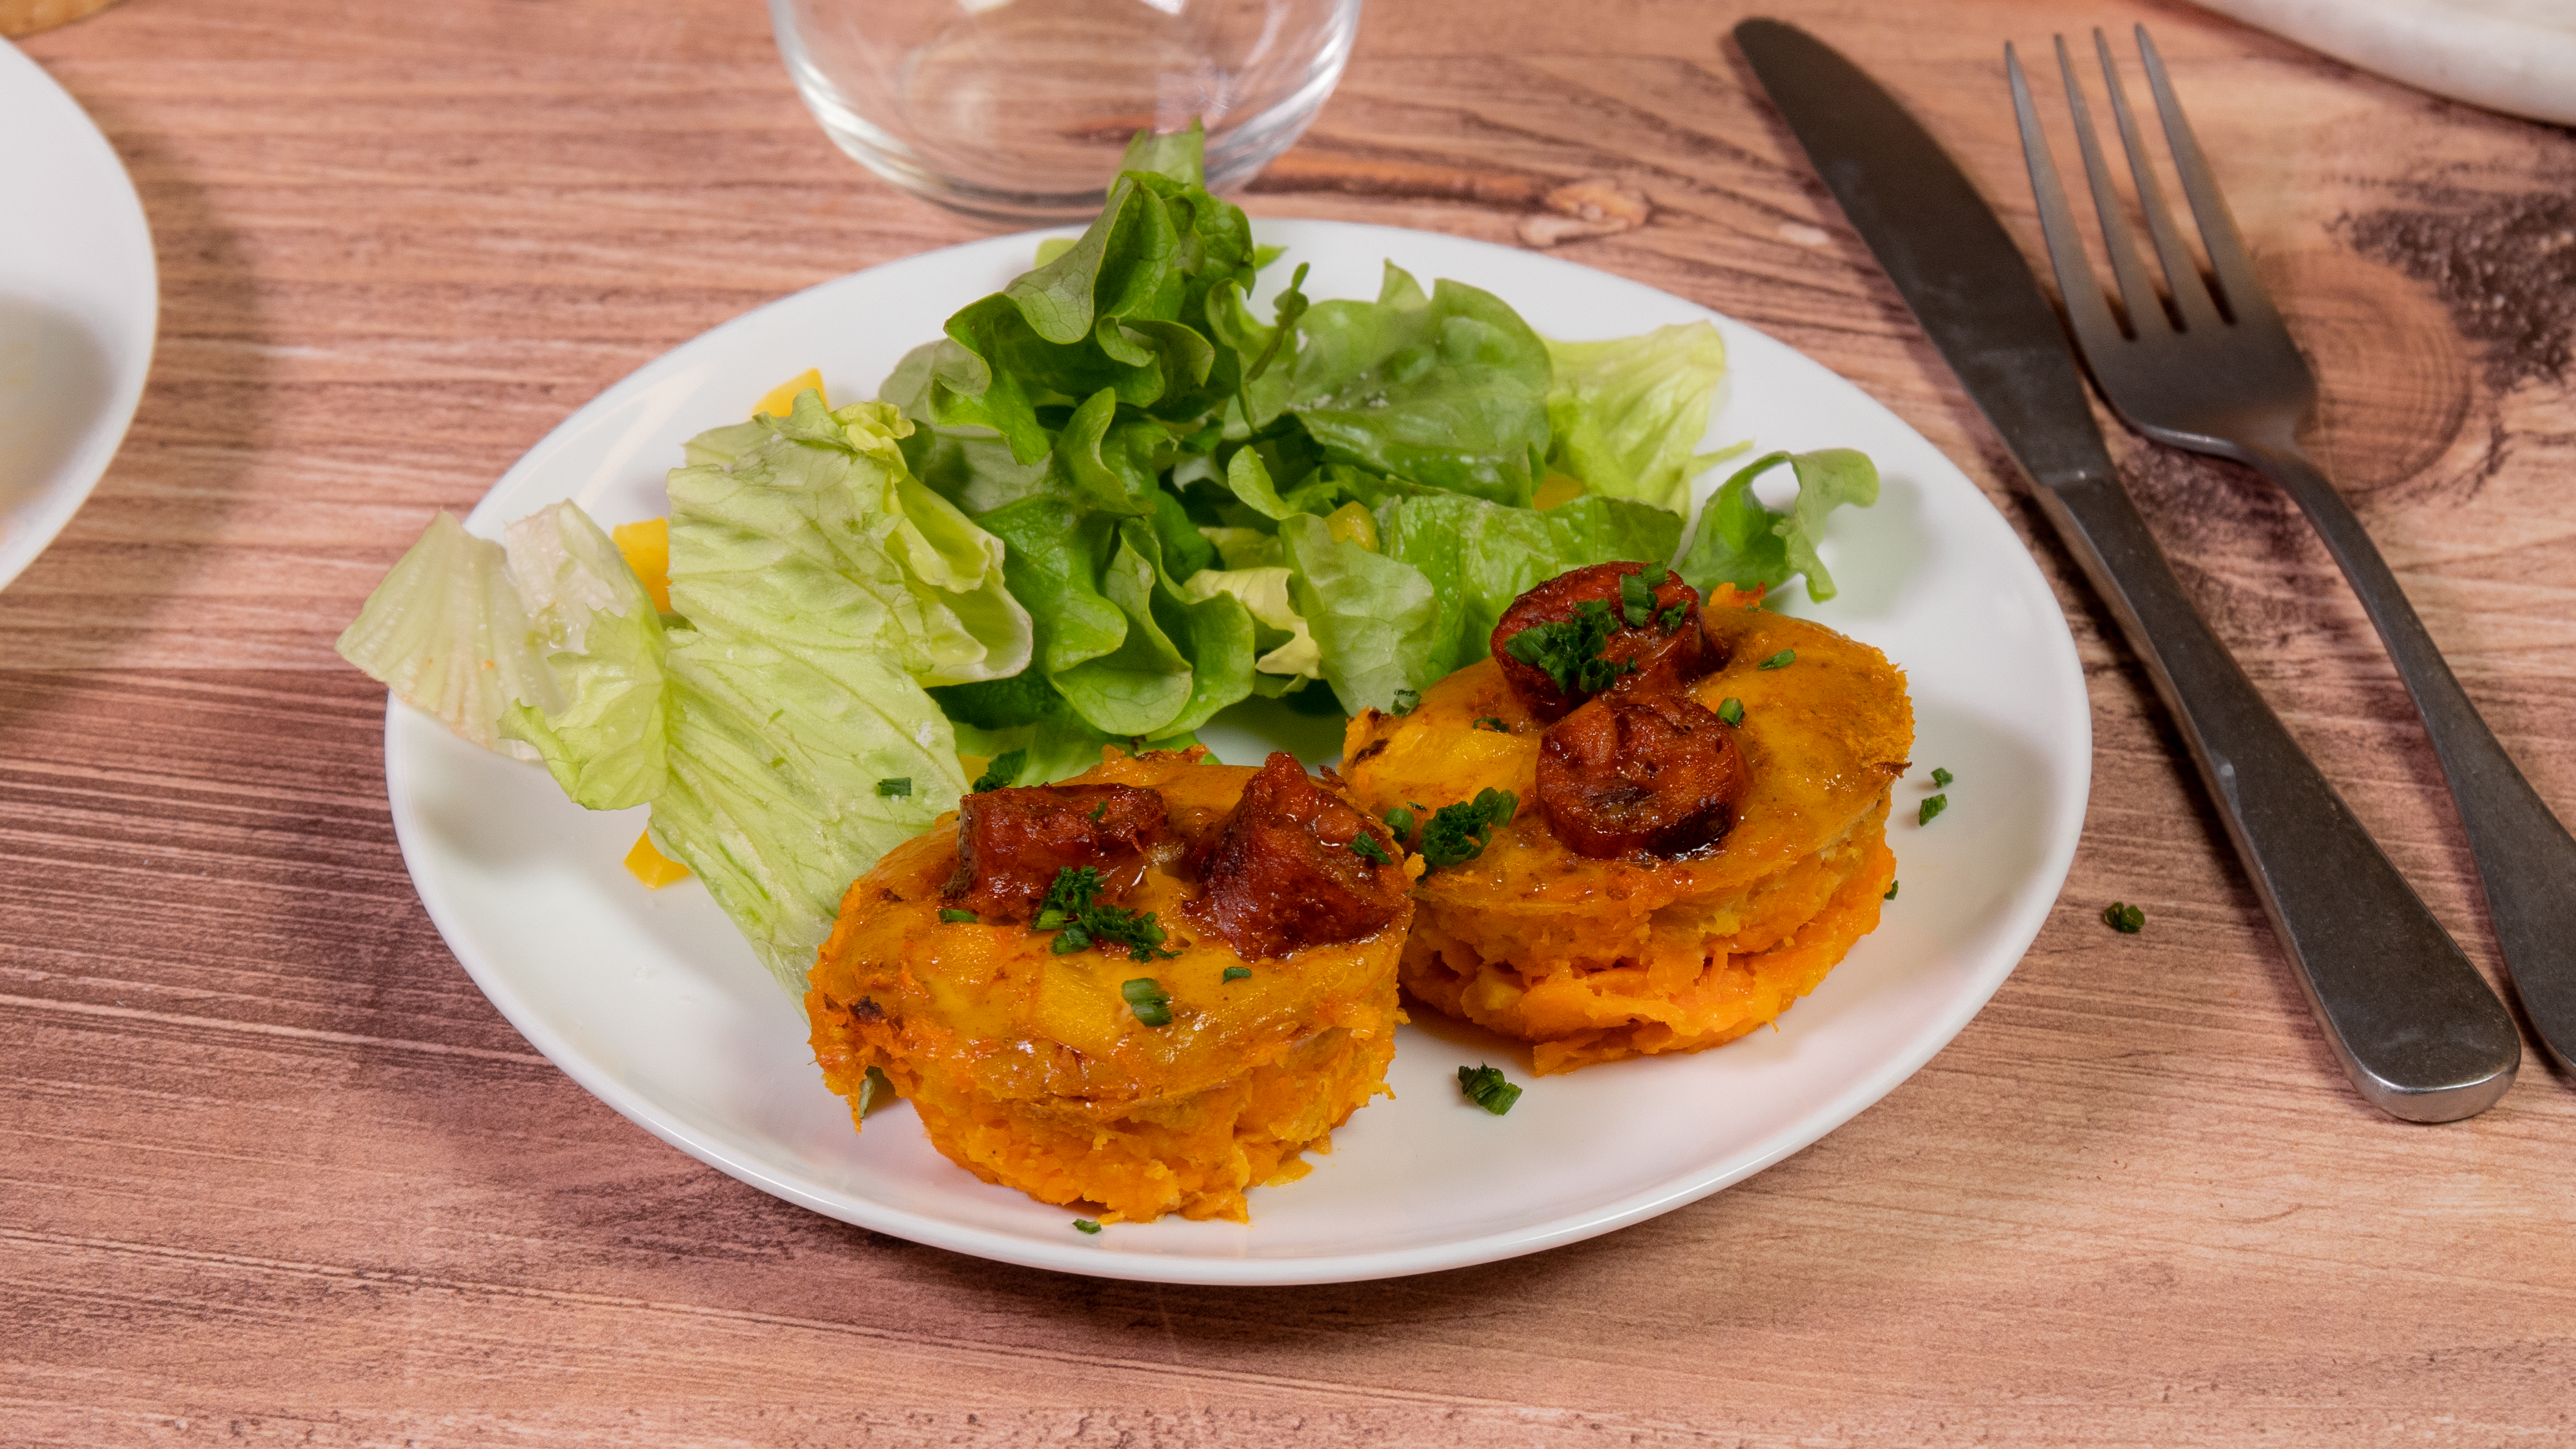 Rôti aux saucisses de volaille saveur chorizo Réghalal dans une assiette et accompagné de salade. L'assiette est posée sur une table en bois, avec des couverts et un verre